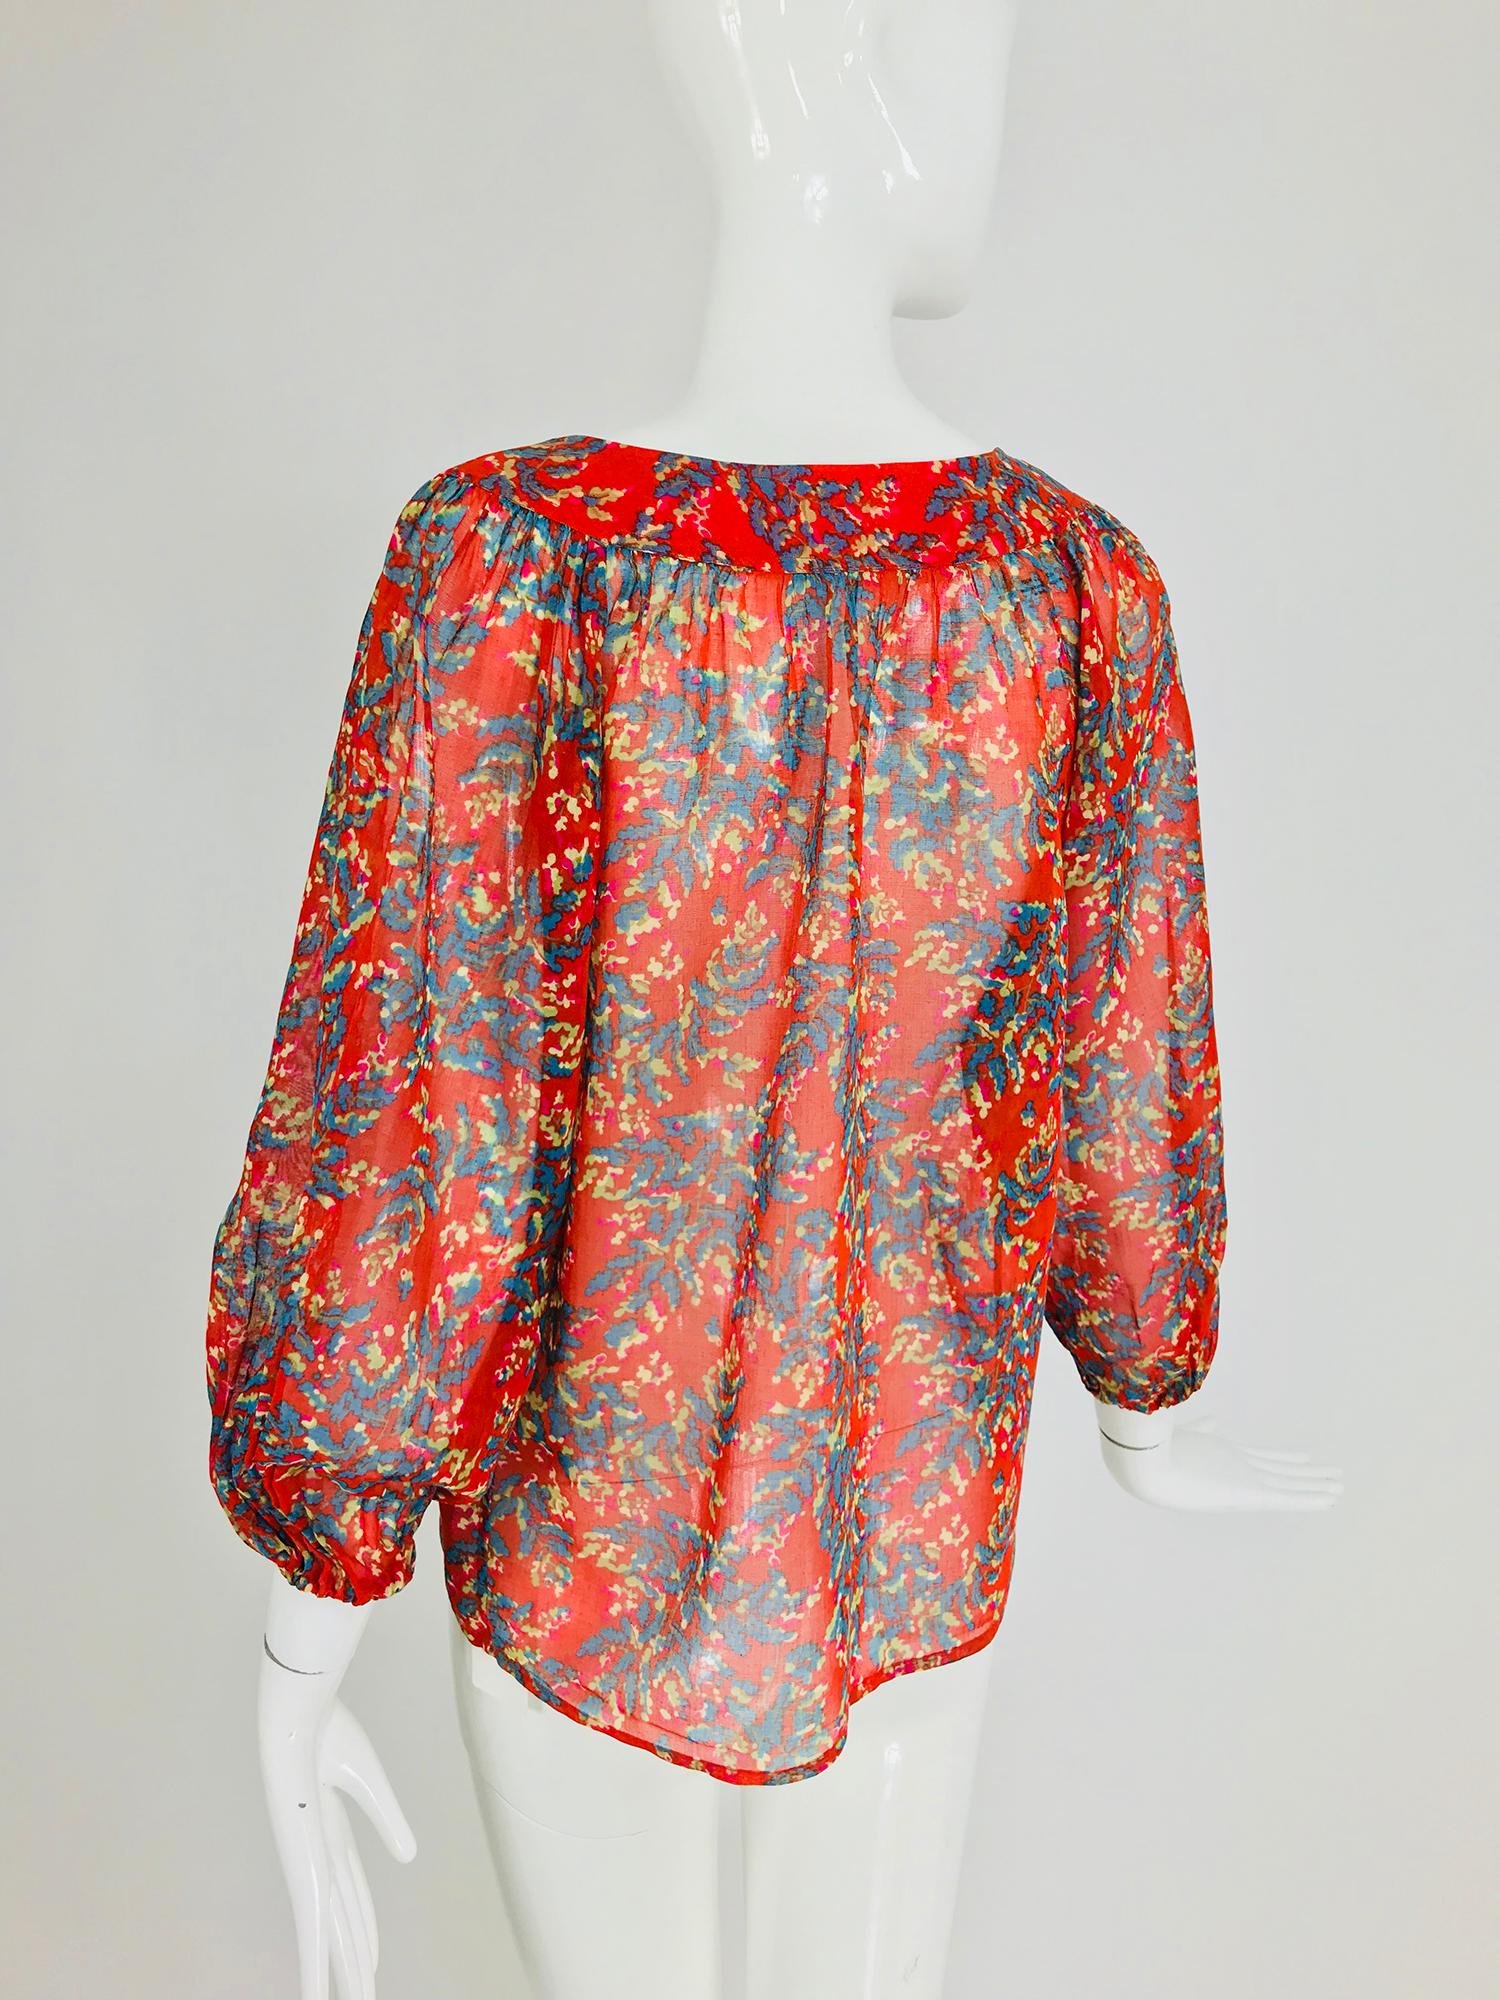 Yves Saint Laurent sheer floral cotton peasant blouse 1970s 2